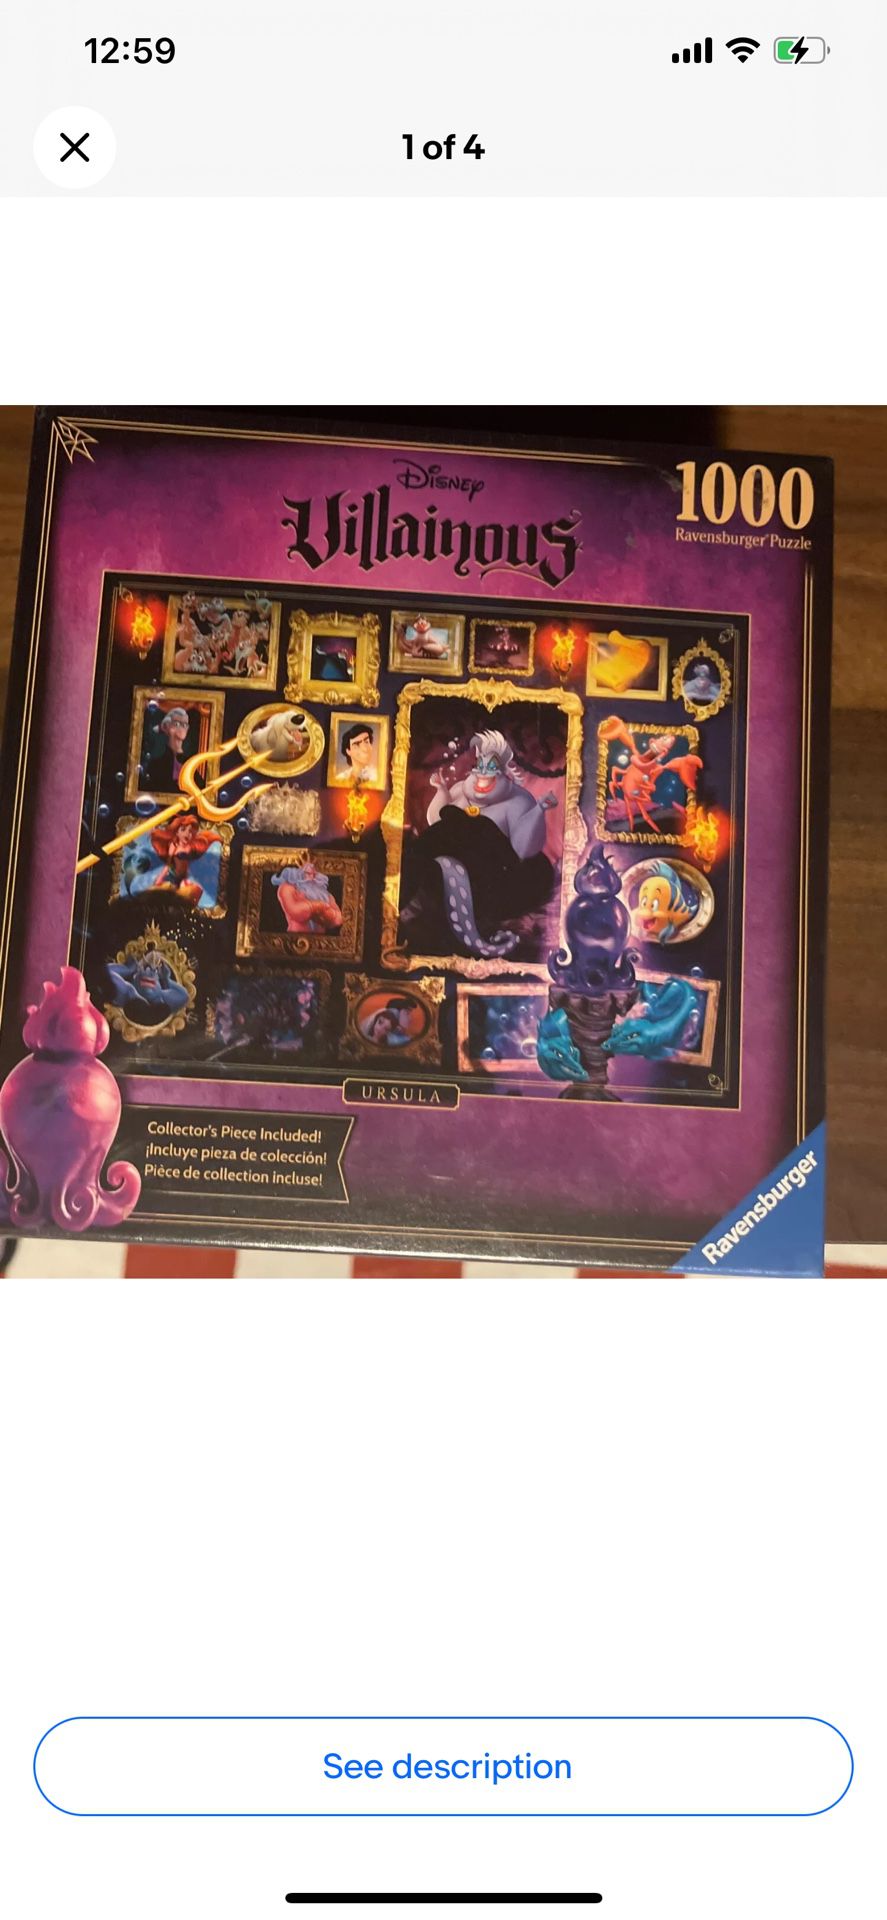 New Ravensburger Disney Villainous URSULA 1000 piece puzzle COMPLETE